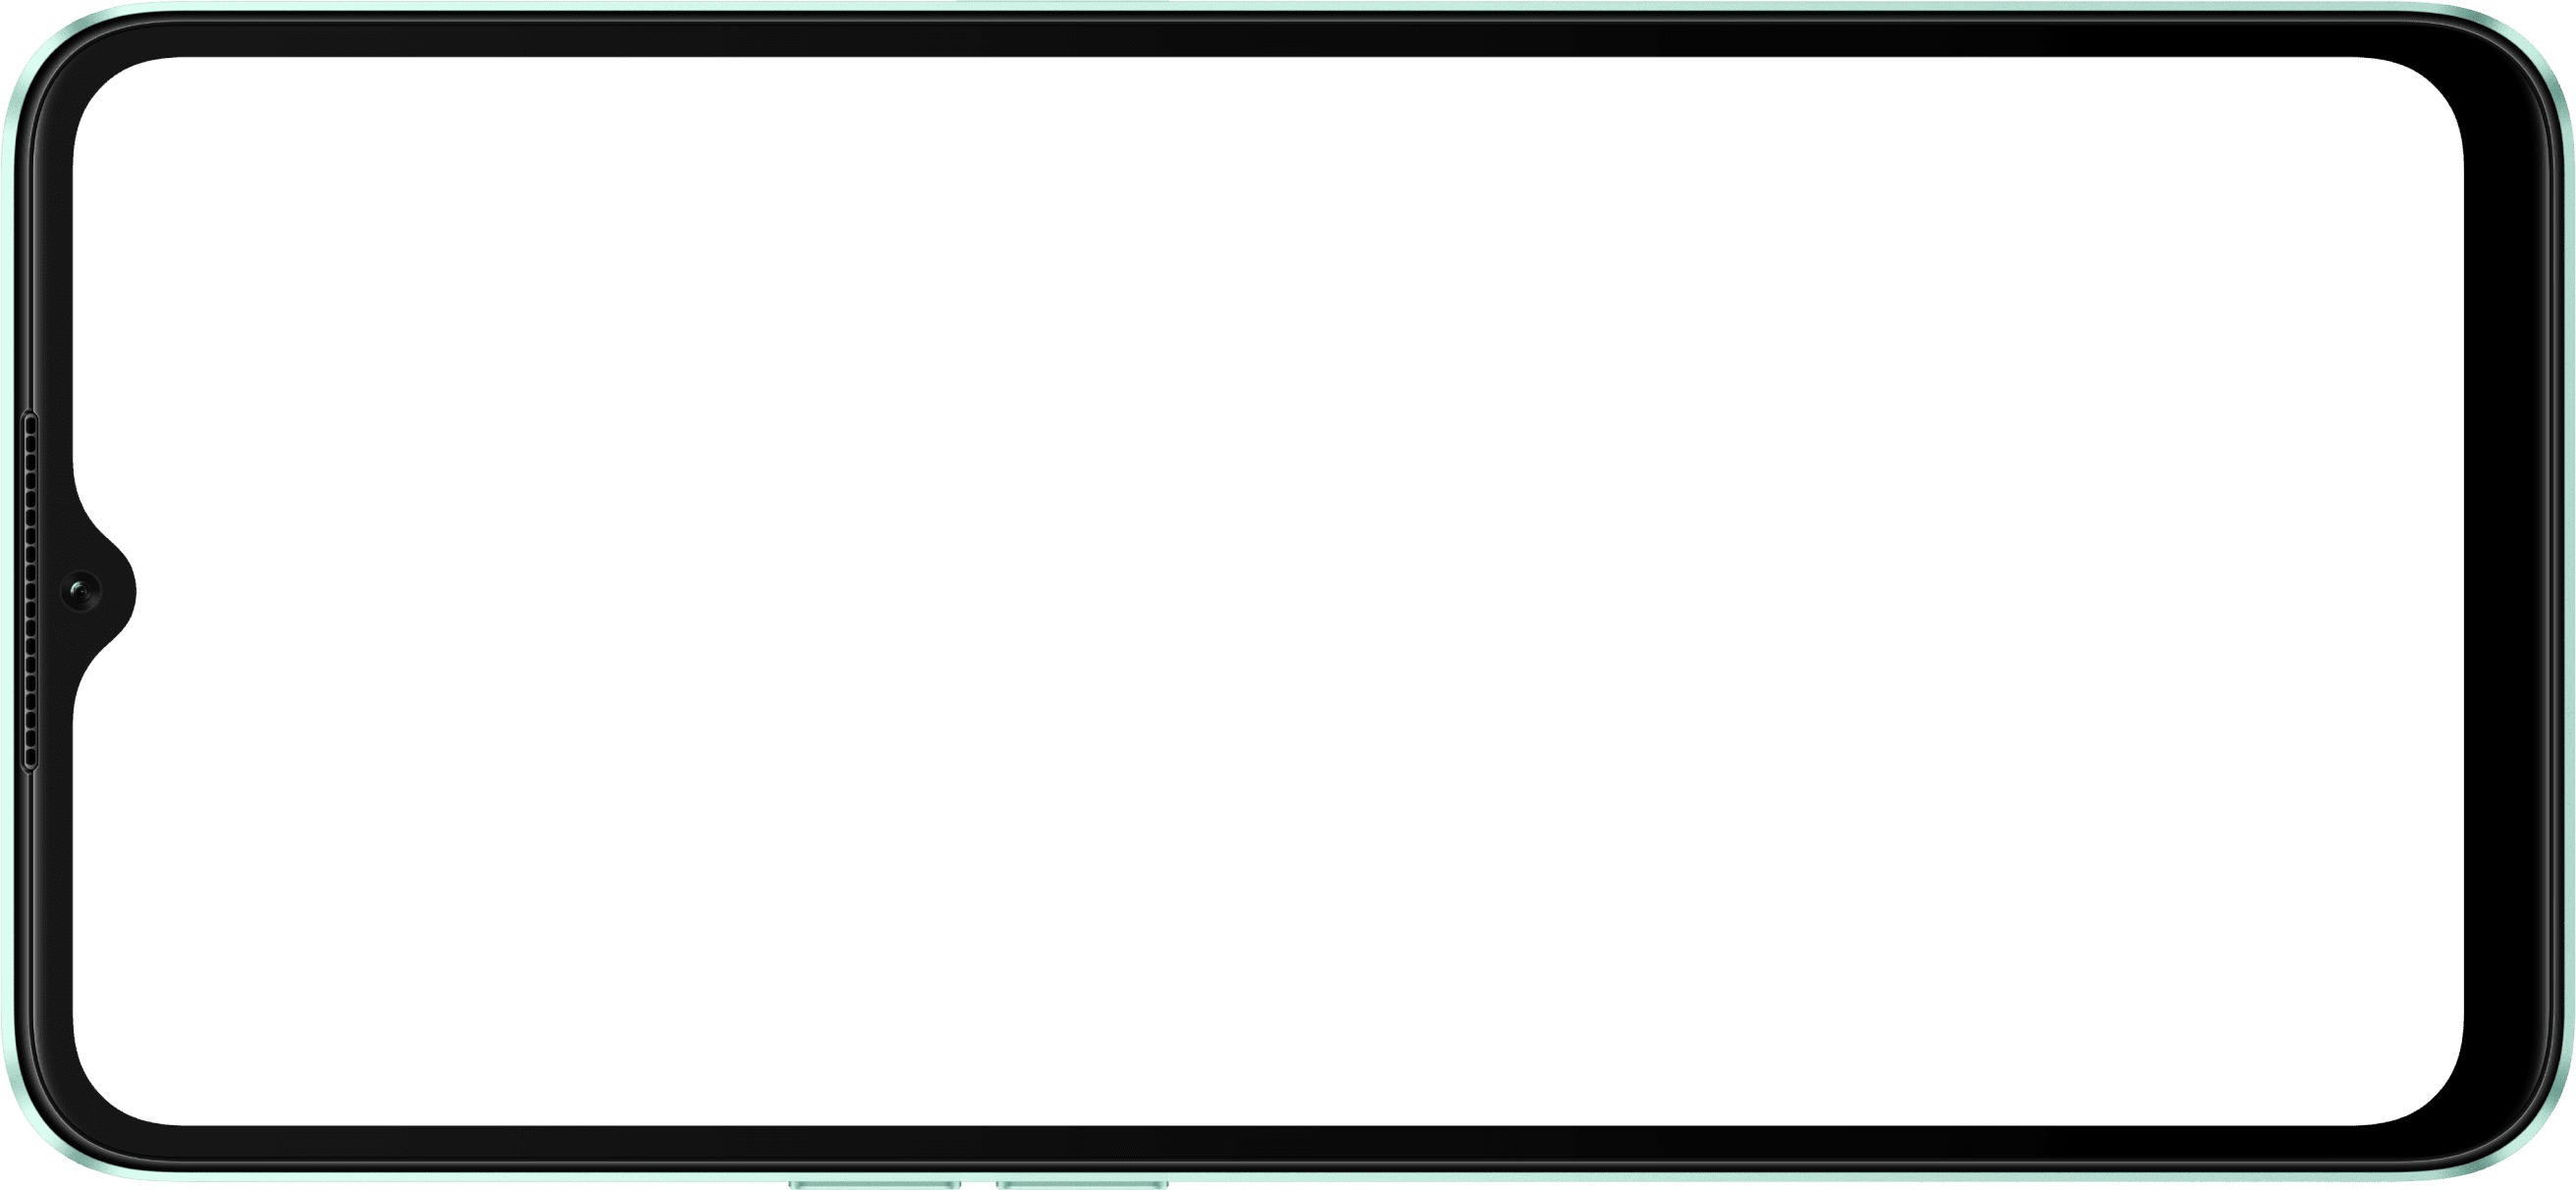 شاشة عرض بألوان غنية مقاس 16.66 سم (6.56 بوصة) من OPPO2